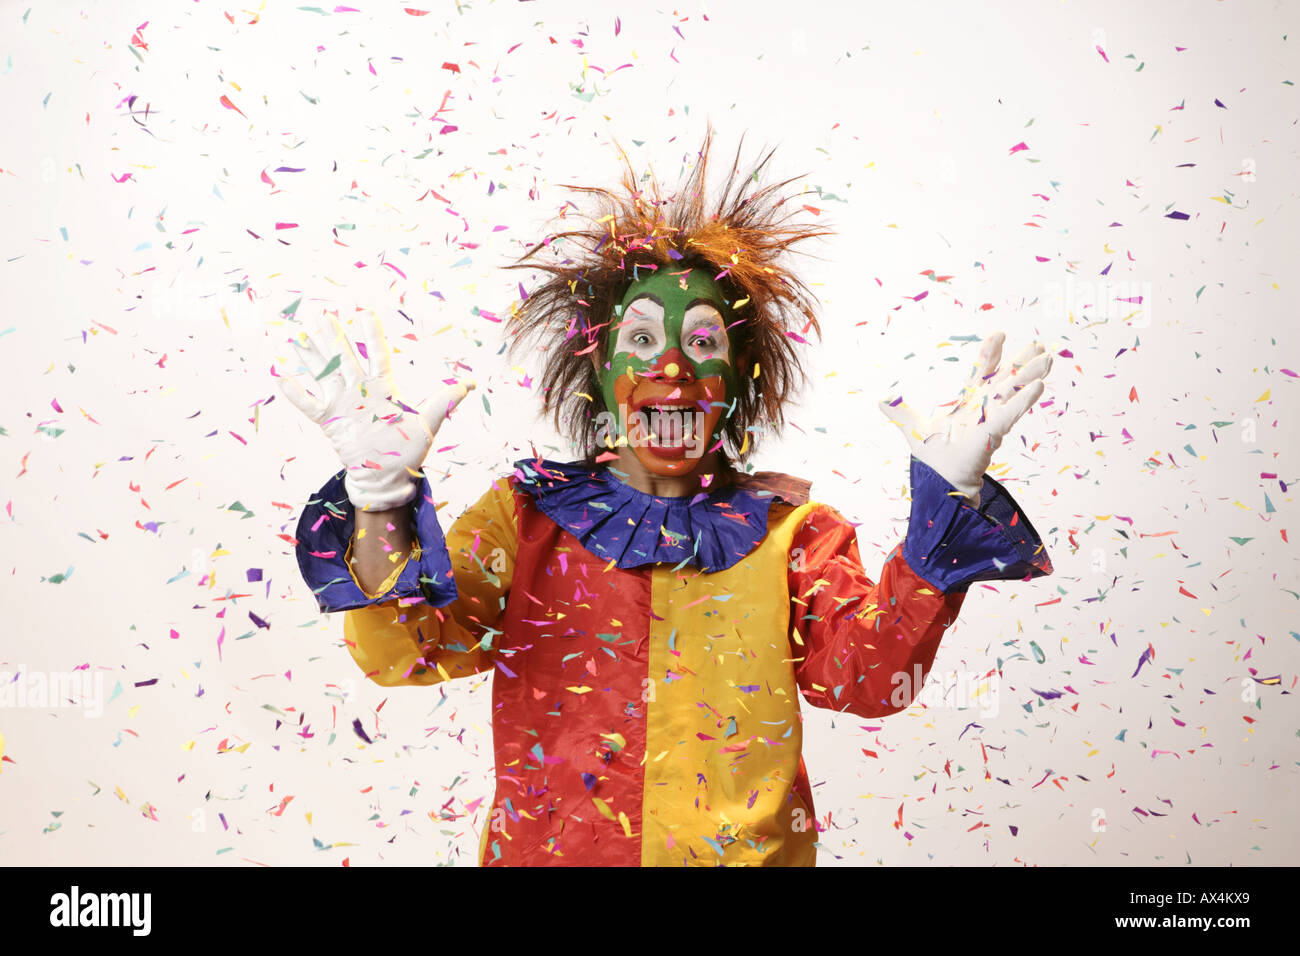 Ritratto di un joker guardando eccitato con confettis a cadere su di lui Foto Stock